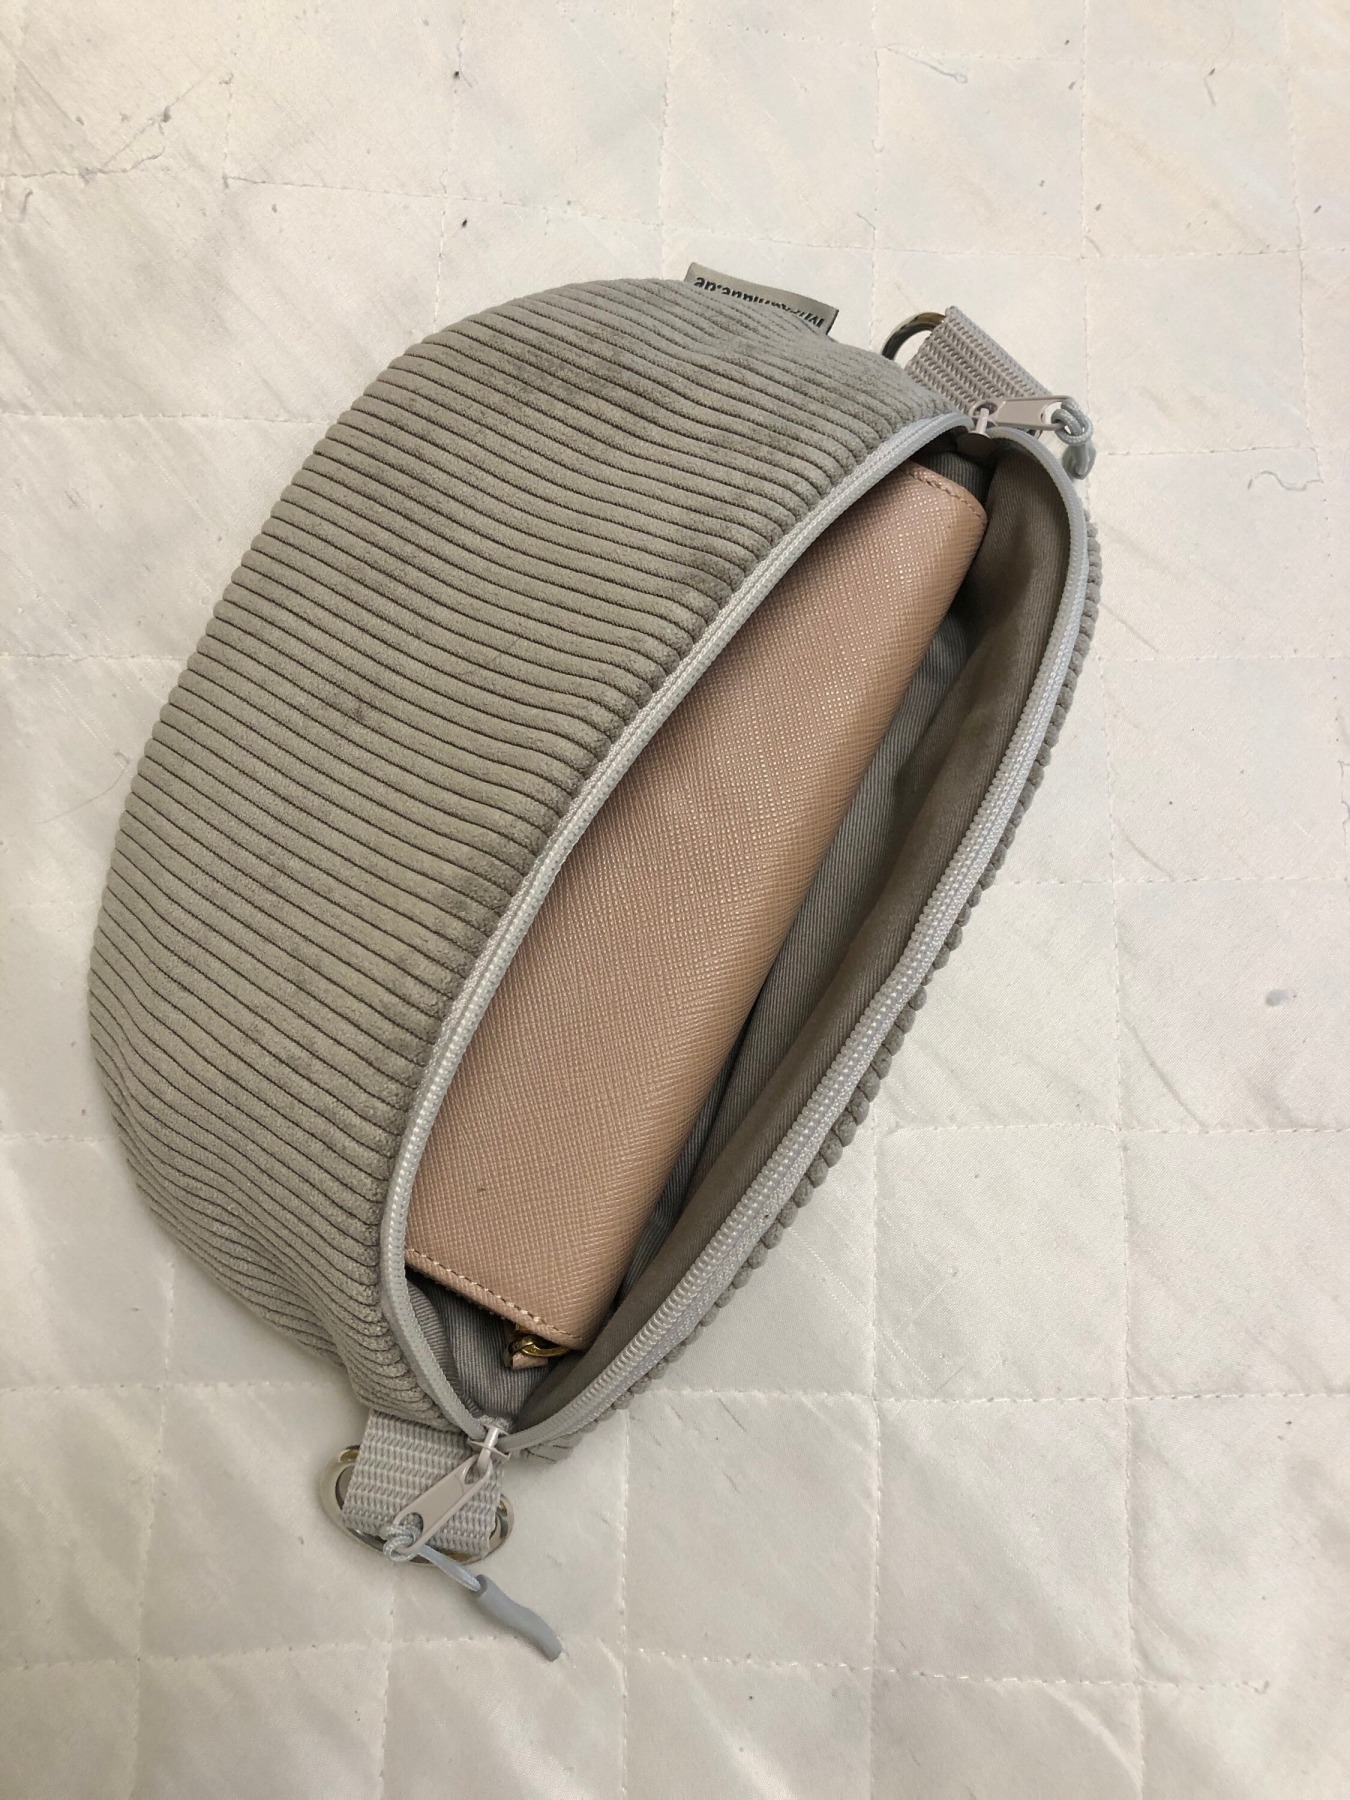 XL Crossbag Cord graubeige Bauchtasche Hipbag leicht und praktisch Kord Cordstoff grau beige mit